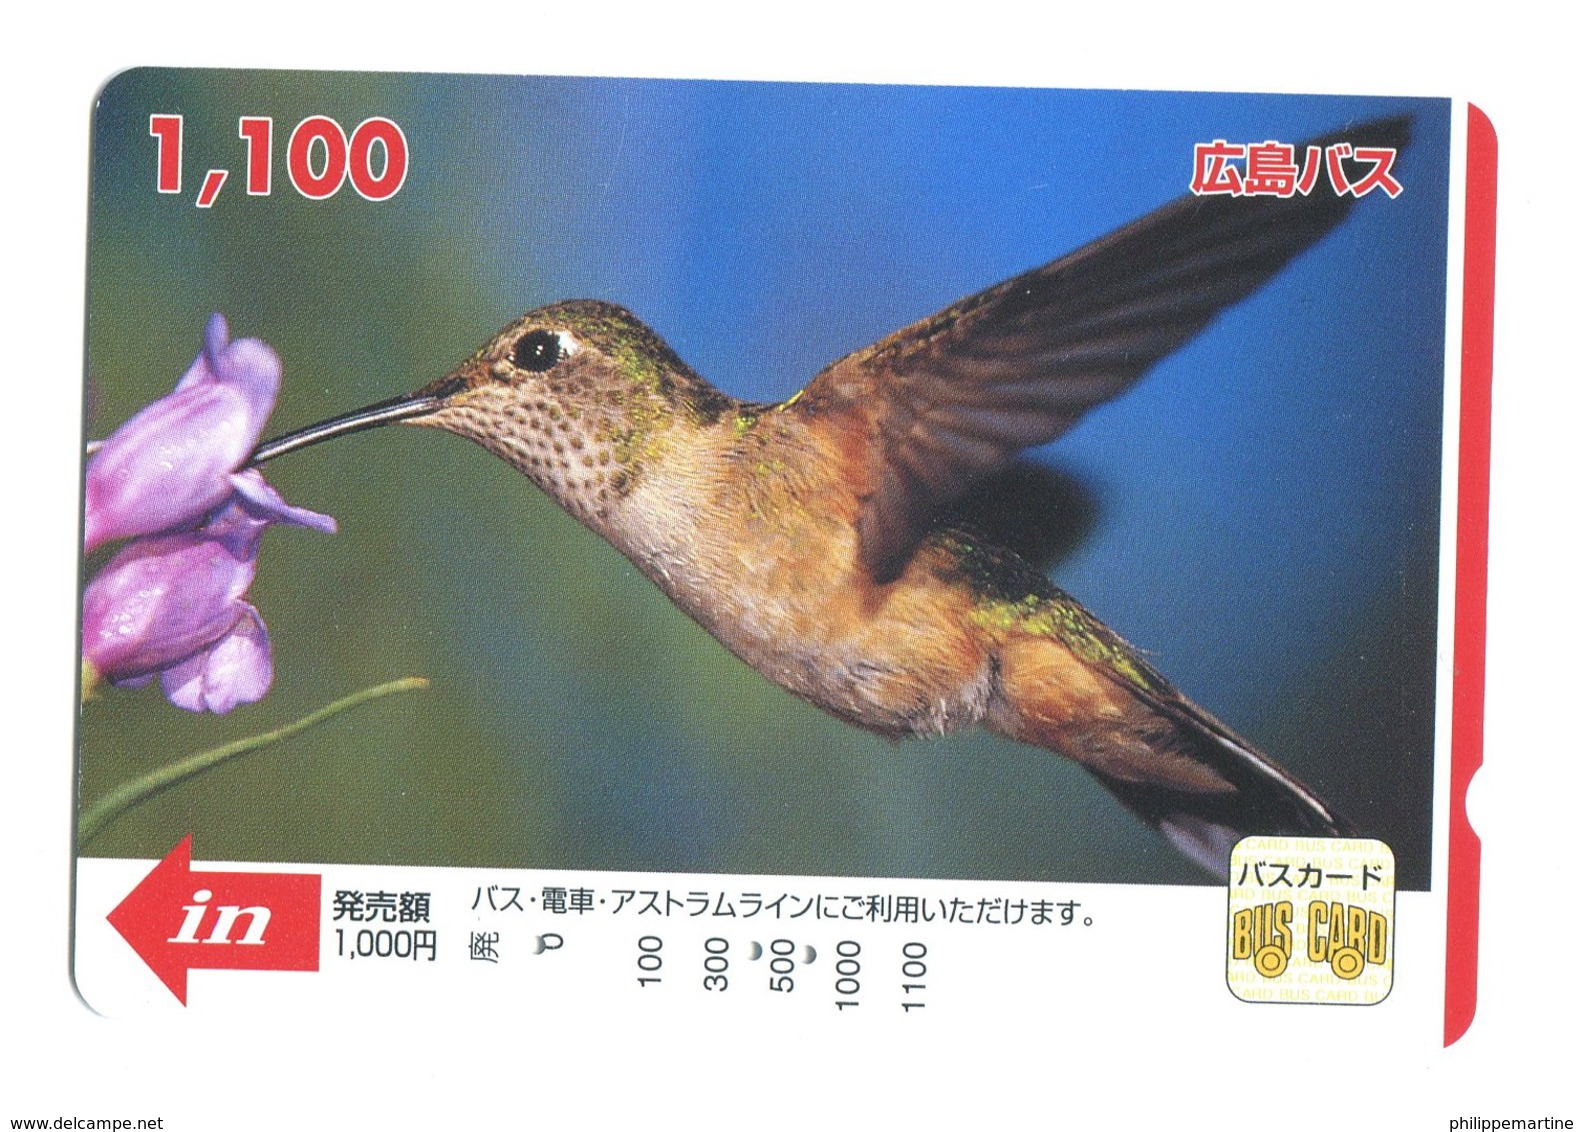 Japon - Bus Card : Colibri - Welt